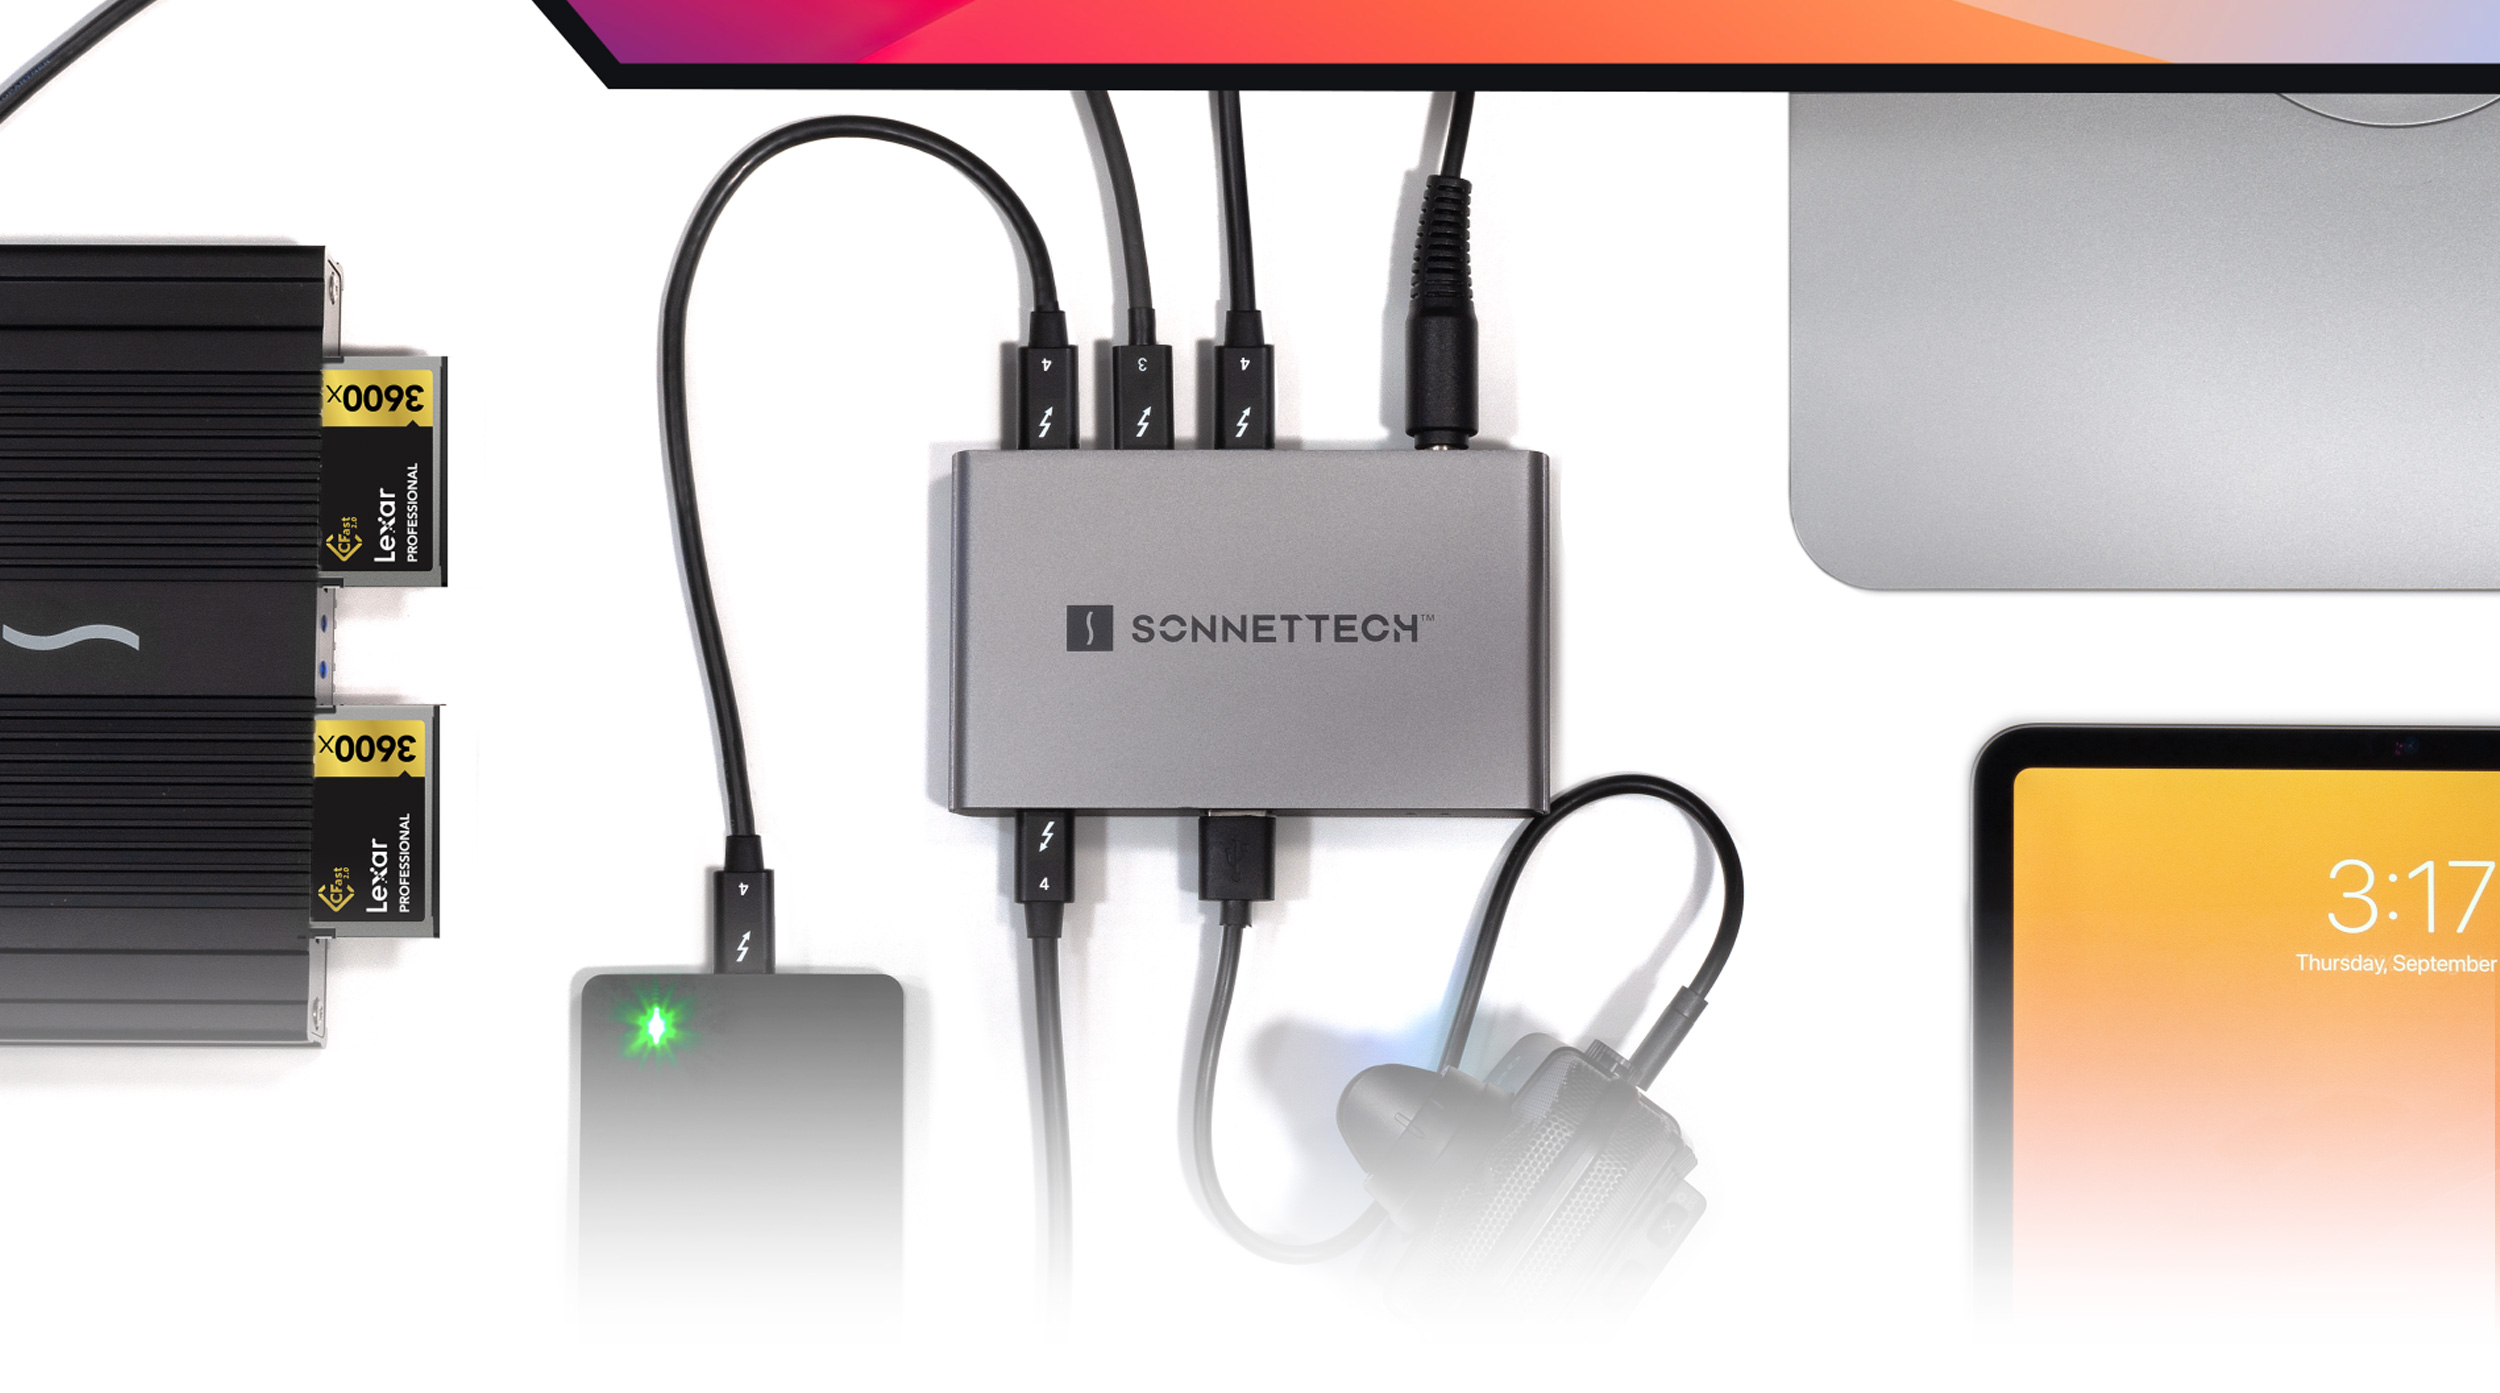 Adaptateur HDMI USB-C - Mobility - Connectique - Hub - Accessoires